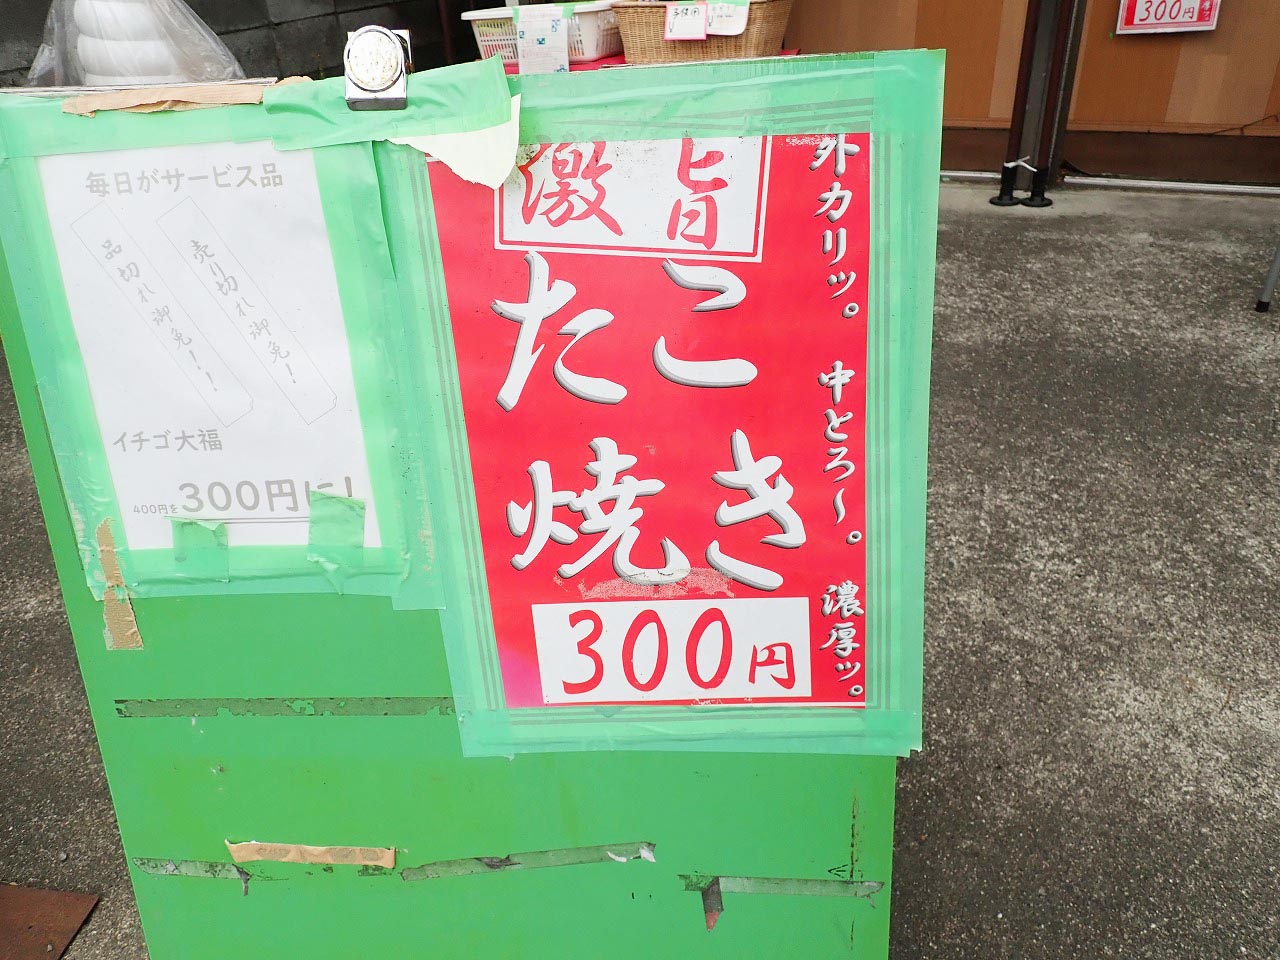 300円のたこ焼きを販売している『びっくり太閤』